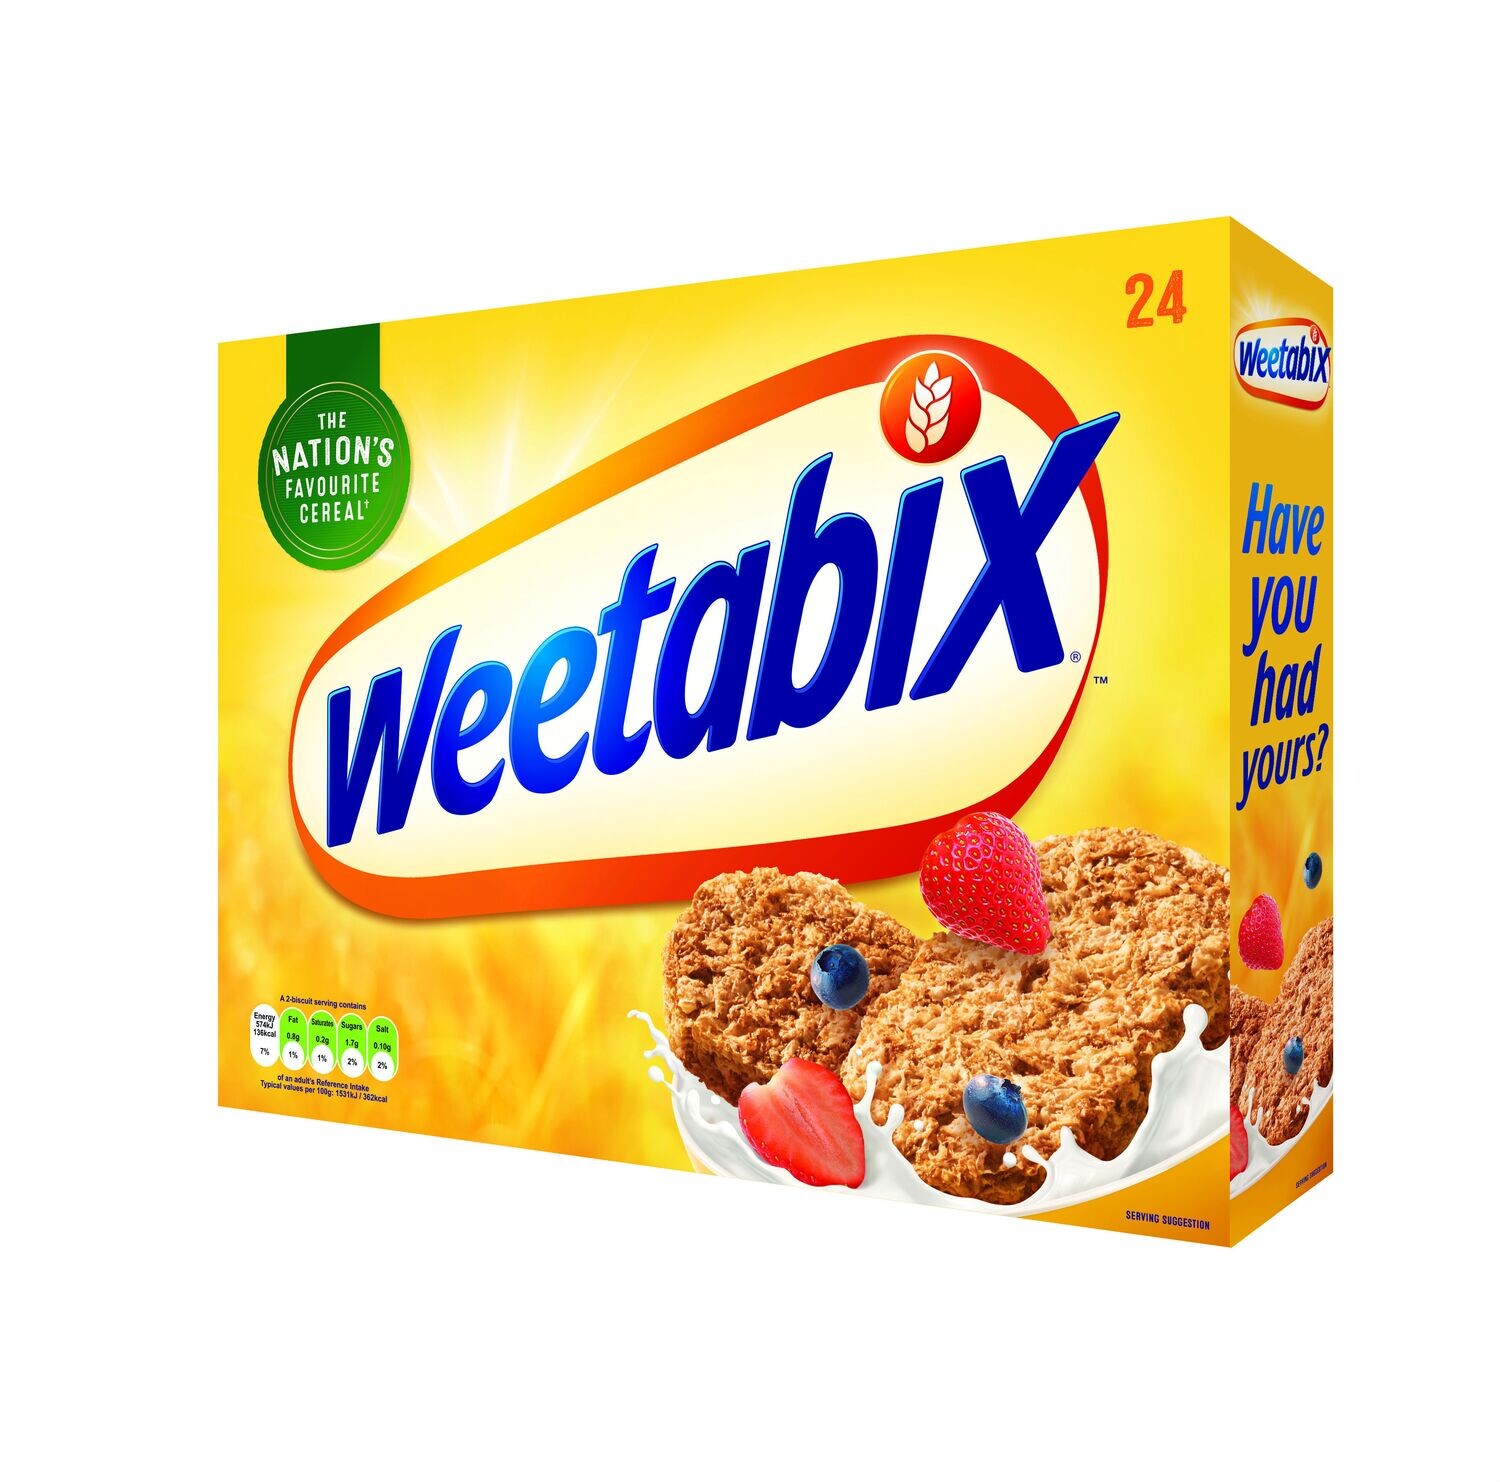 Weetabix - Product of the UK